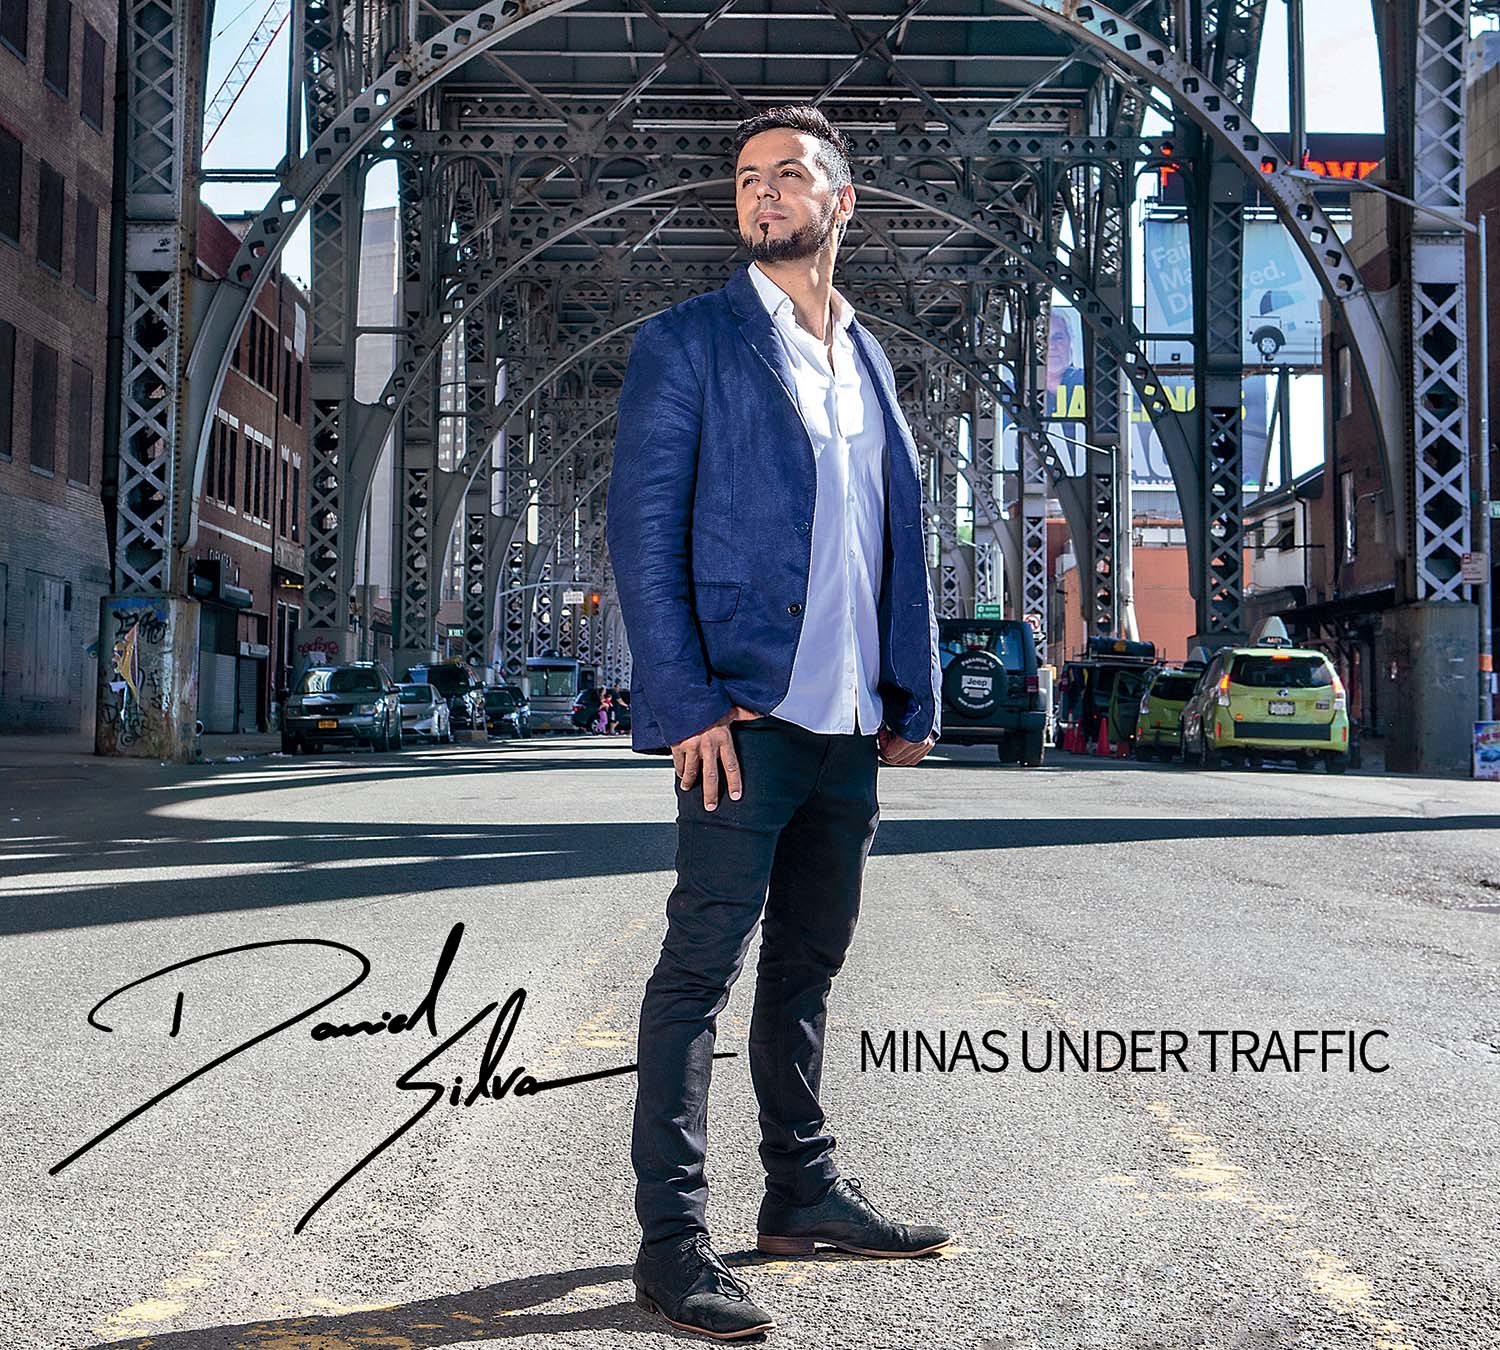 Daniel Silva - 2018, Minas Under Traffic